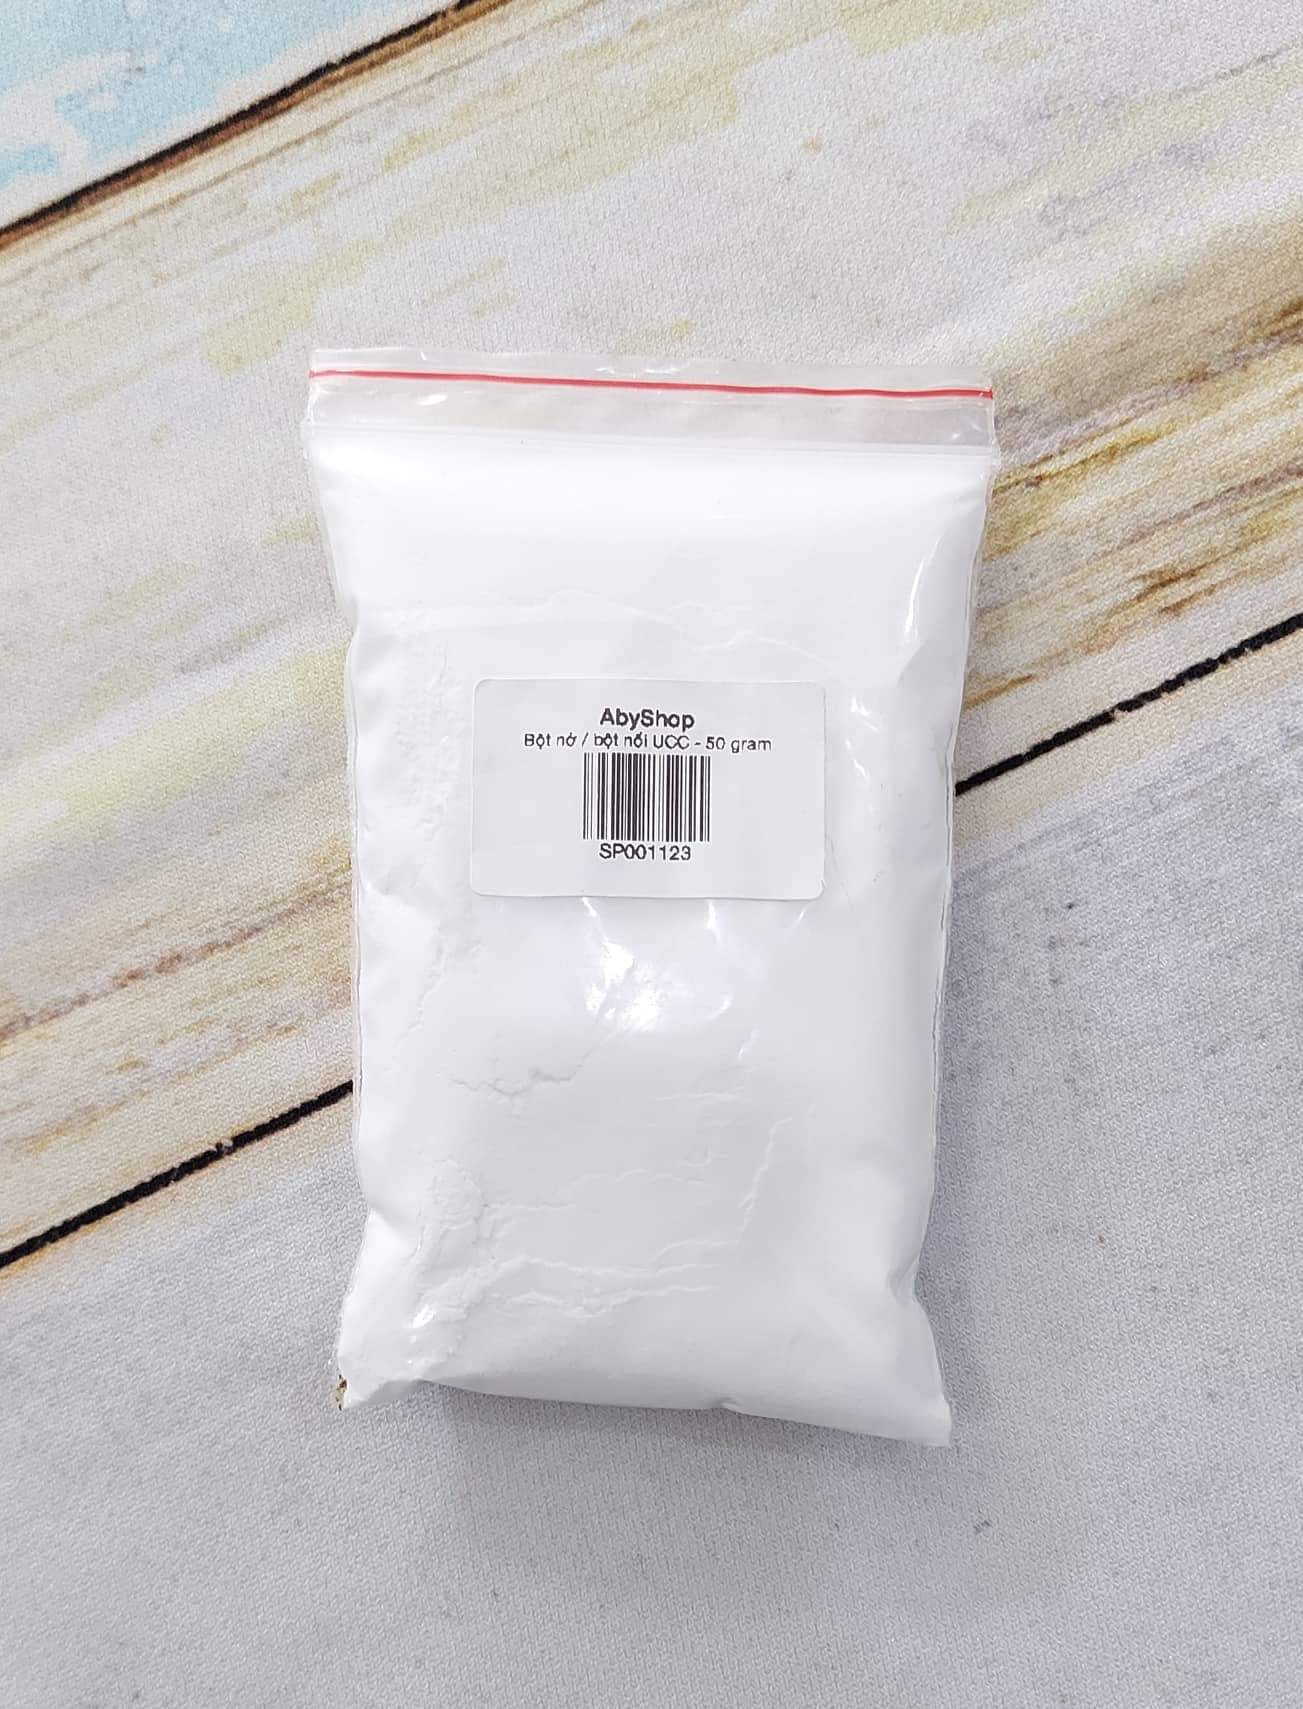 50gr Bột nở bột nổi UCC  CHẤT LƯỢNG CAO  1 gói bột nở Baking Powder